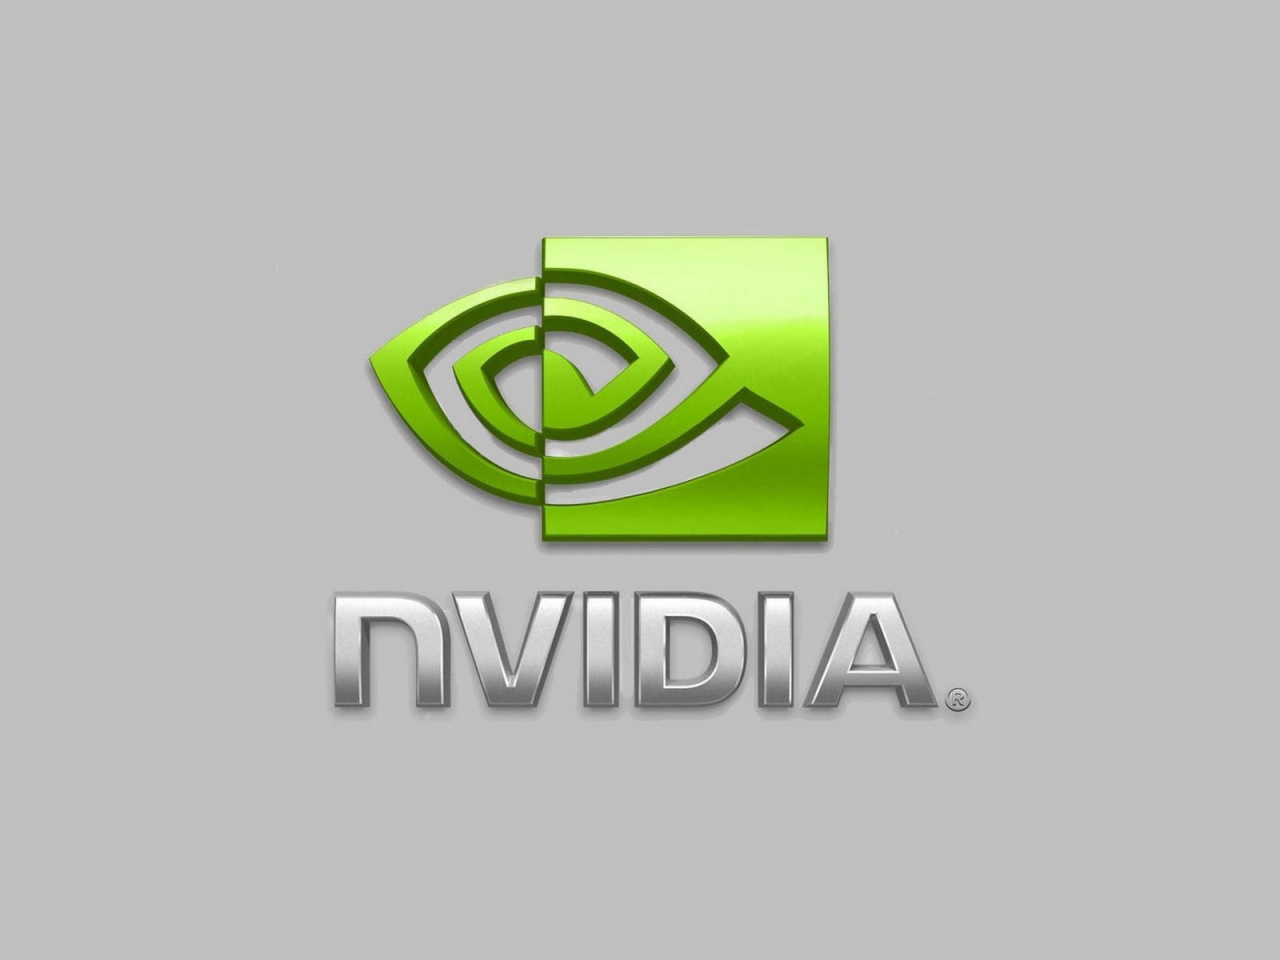 nVIDIA Logo for 1280 x 960 resolution